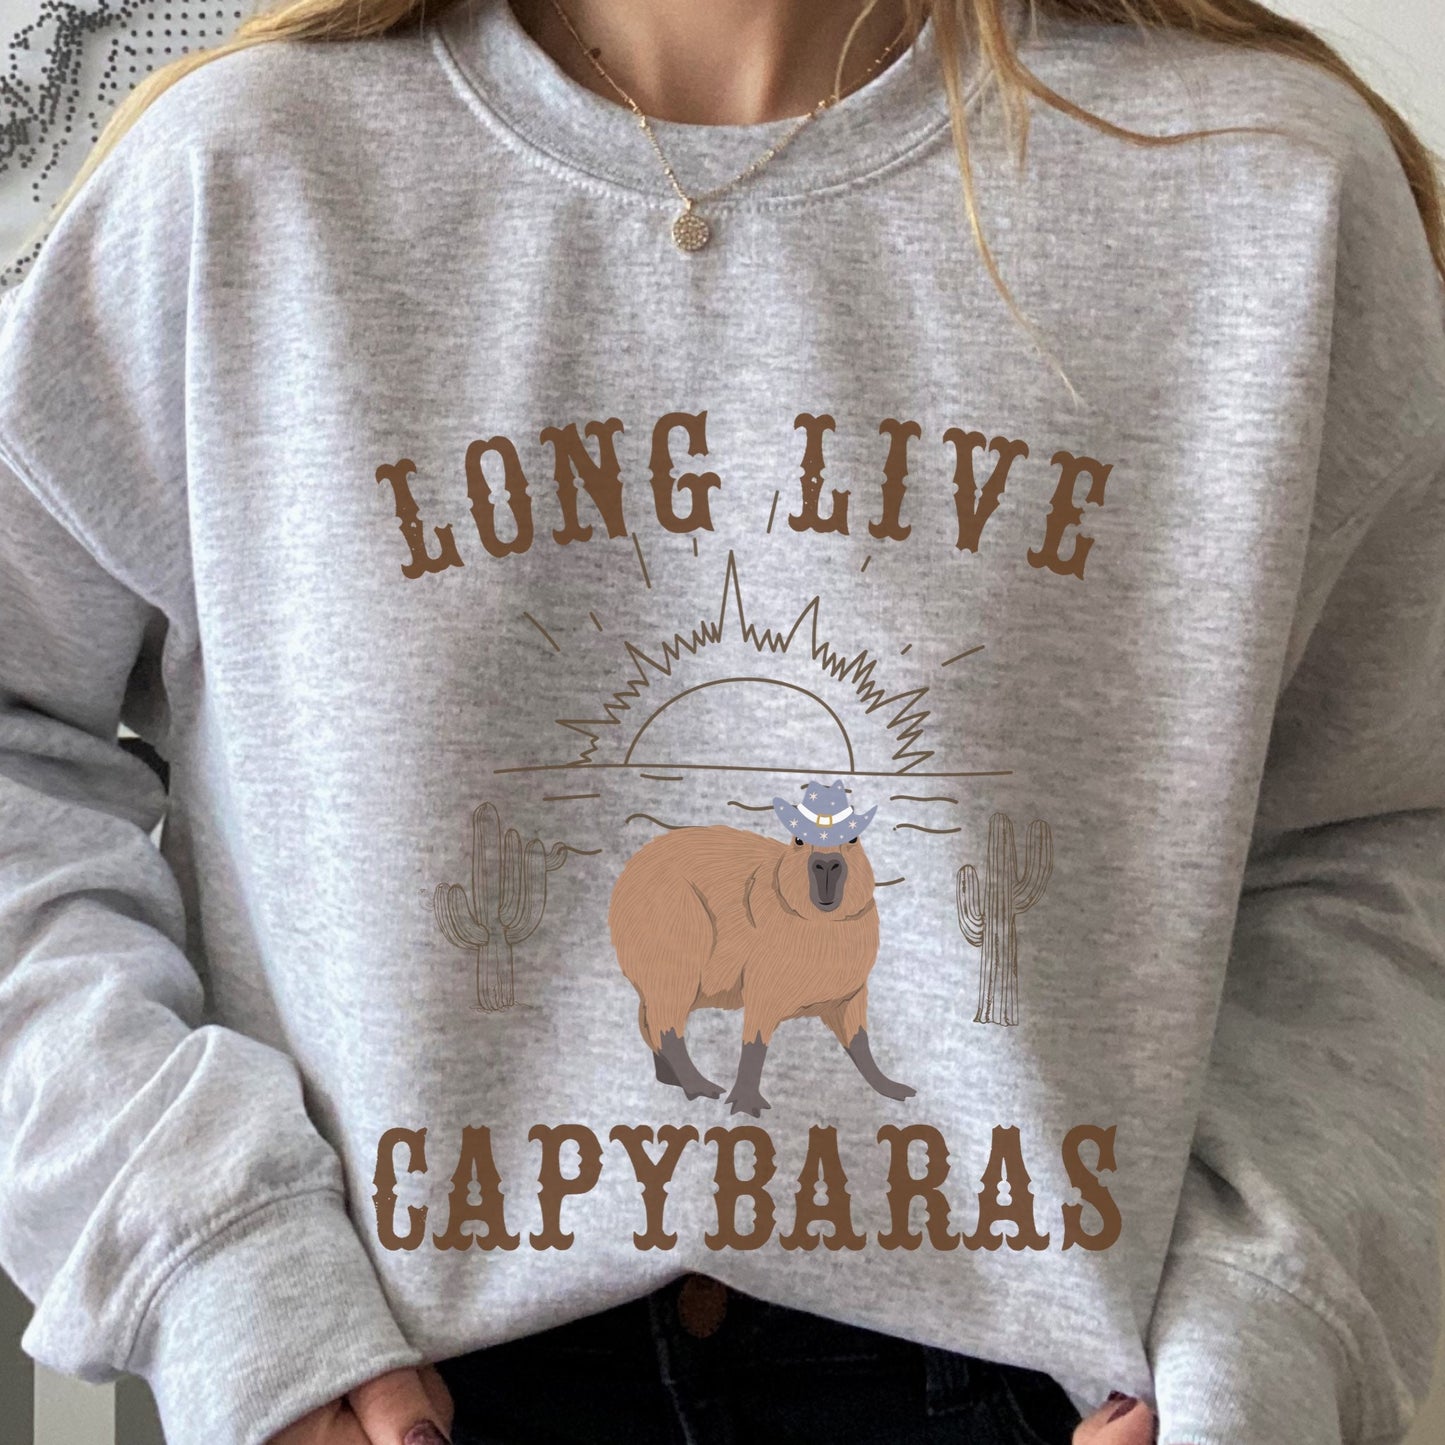 Capybara Sweatshirt, Western Graphic Shirt, Capybara Shirt, Capybara Lover Gift, I love Capybaras, Long Live Capybaras, Desert Sweatshirt